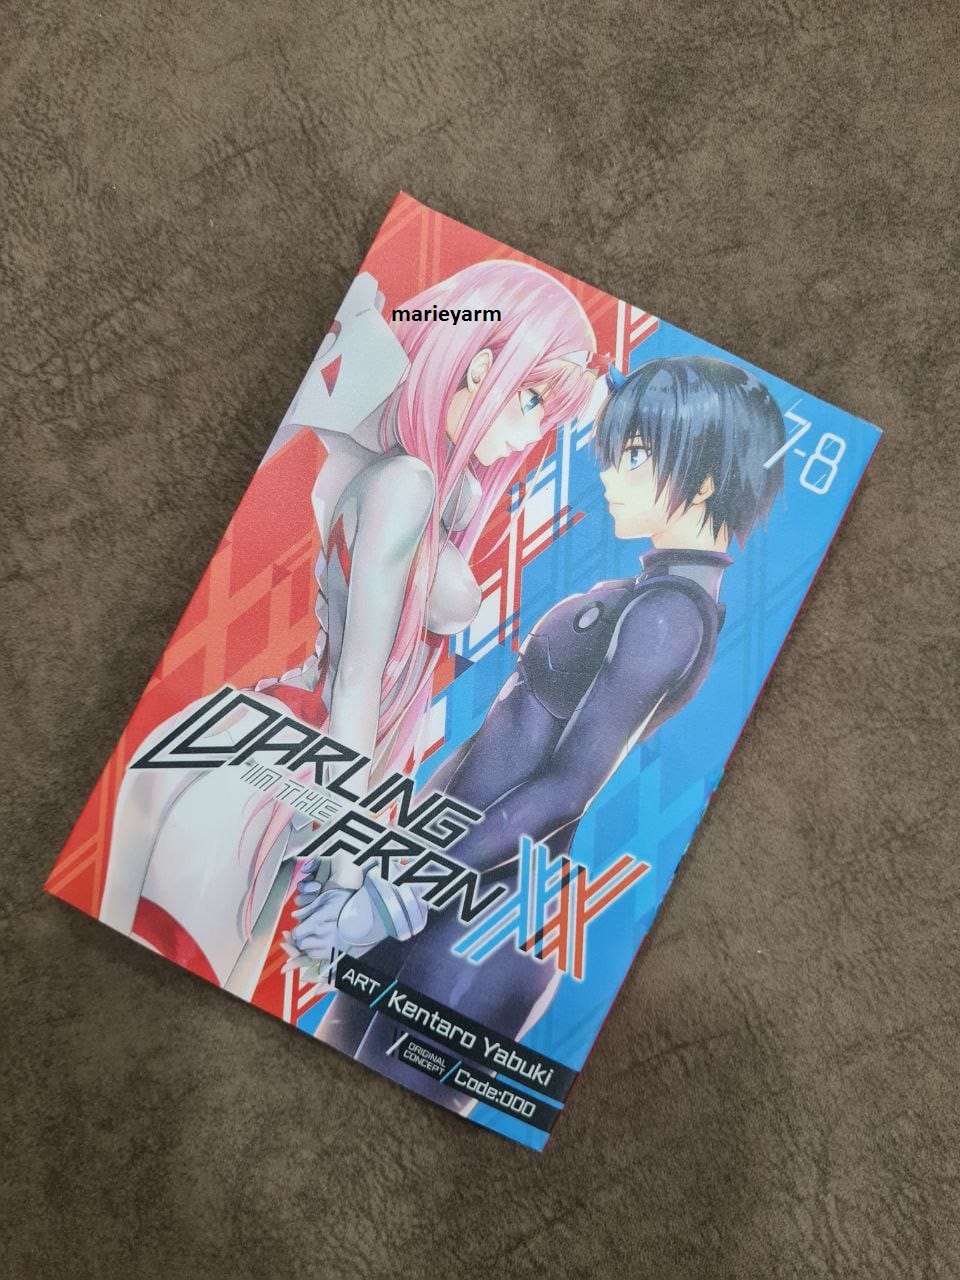 New Darling In The Franxx Manga By Kentaro Yabuki Comic Vol 1 8 English Ver Dhl Single Volumes 